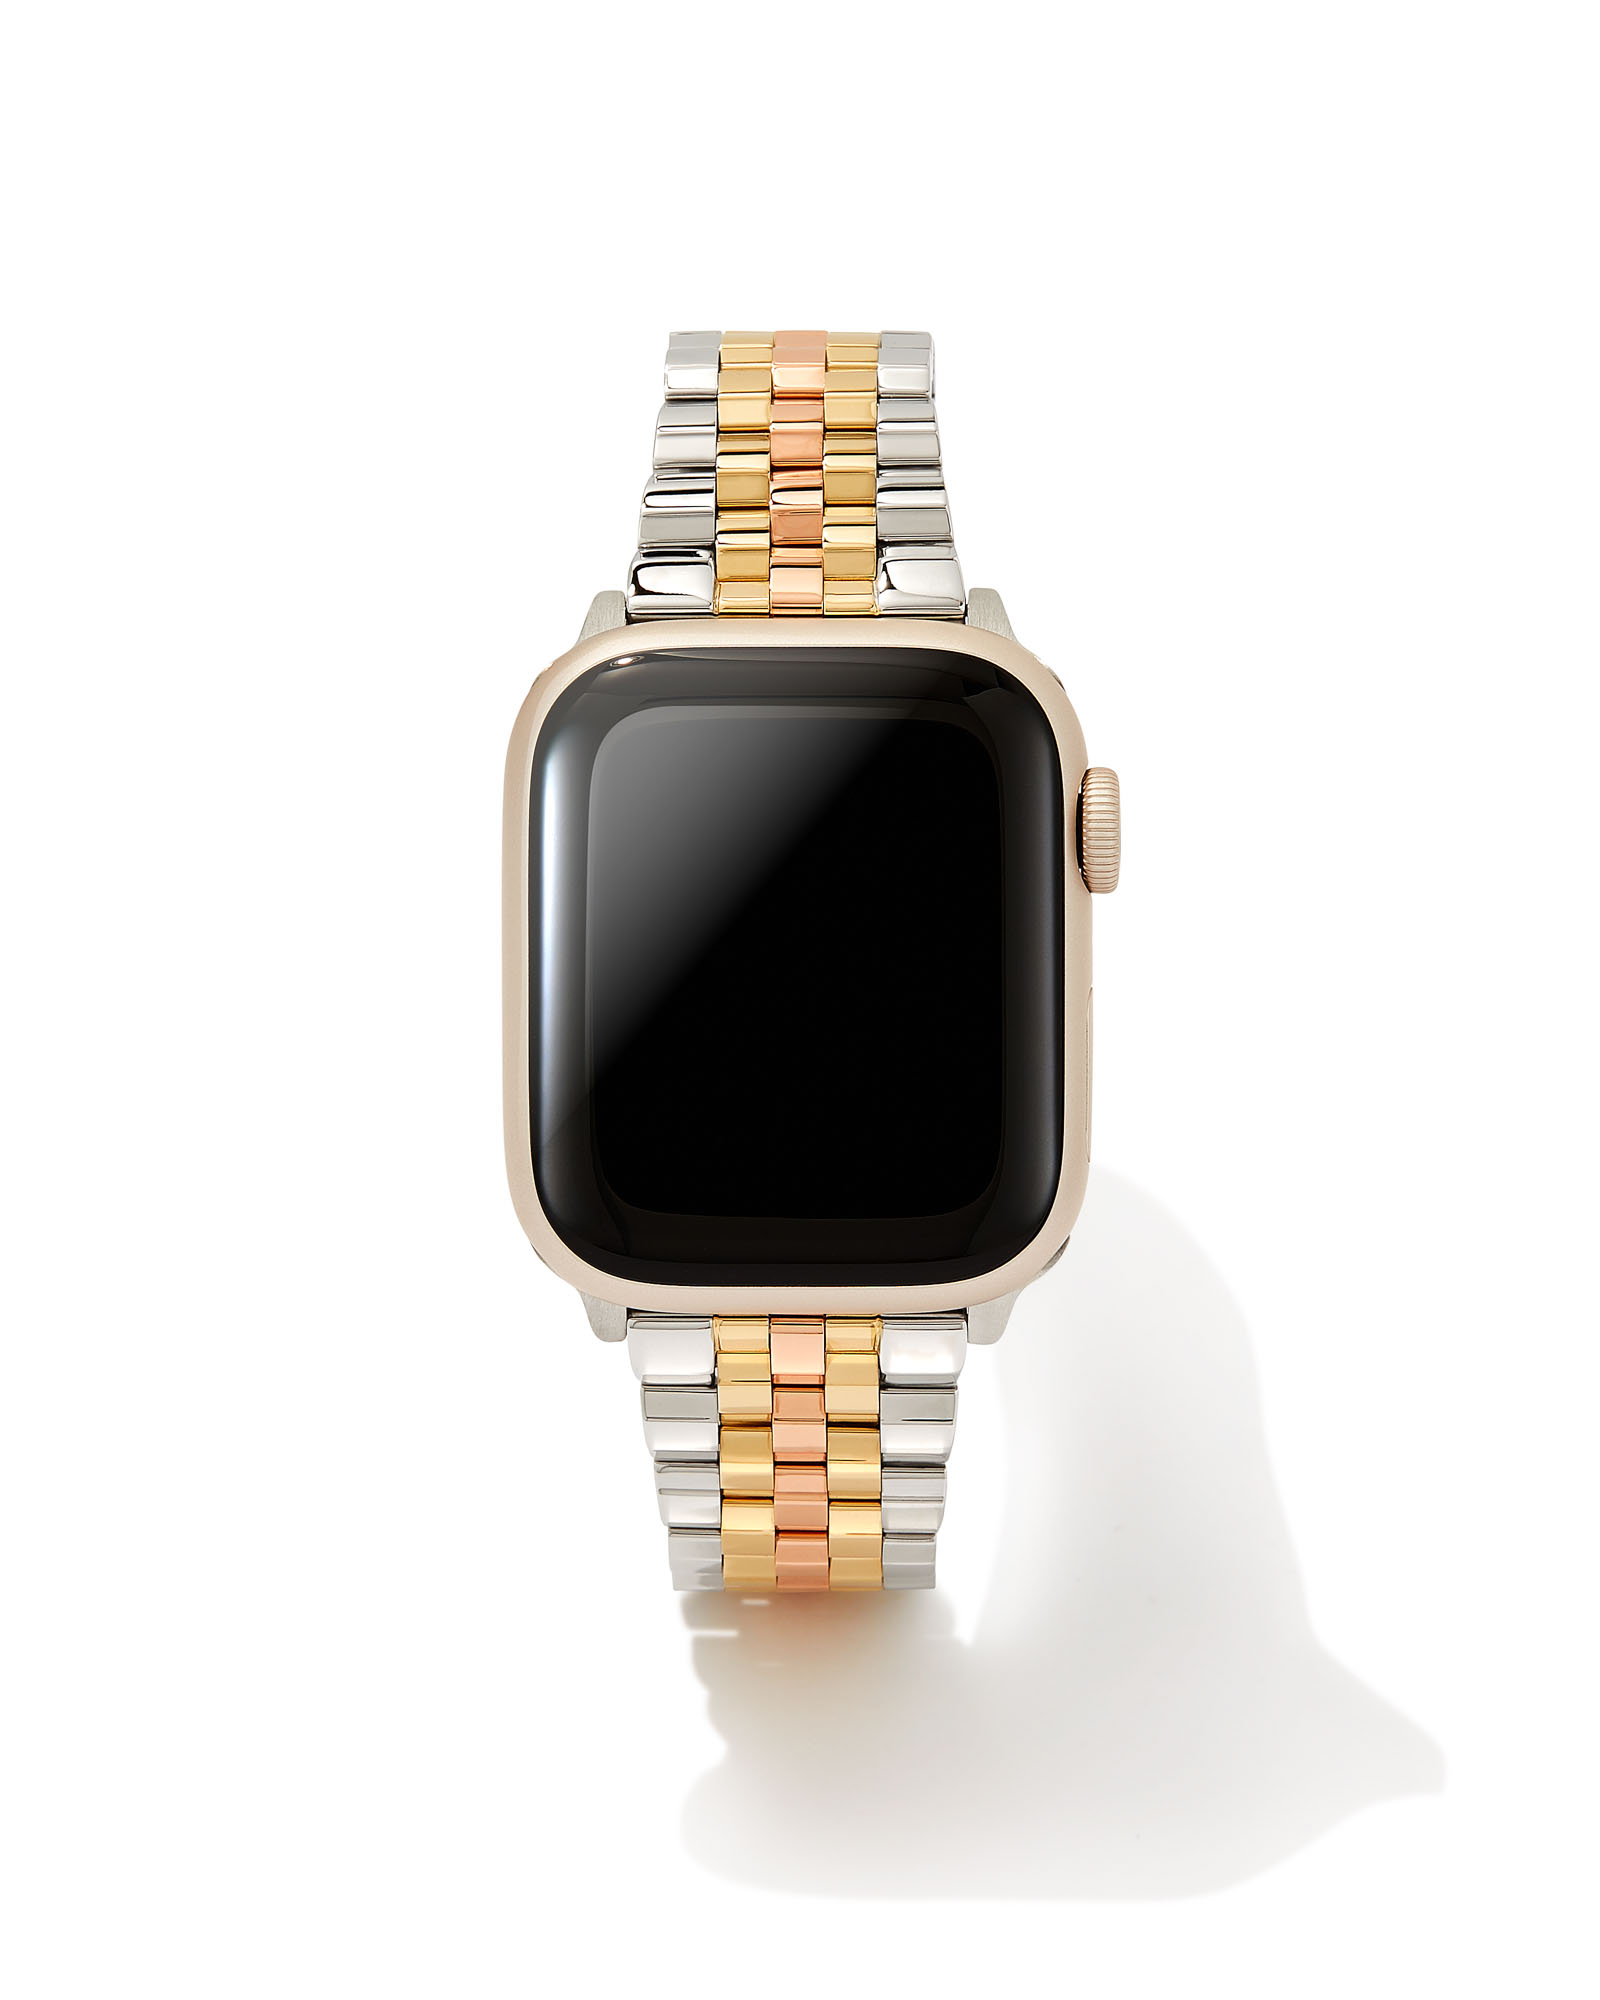 https://www.kendrascott.com/on/demandware.static/-/Sites-kendrascott/default/dwd5e88b64/watches/kendra-scott-alex-5-link-watch-band-gold-rose-gold-stainless-00.jpeg